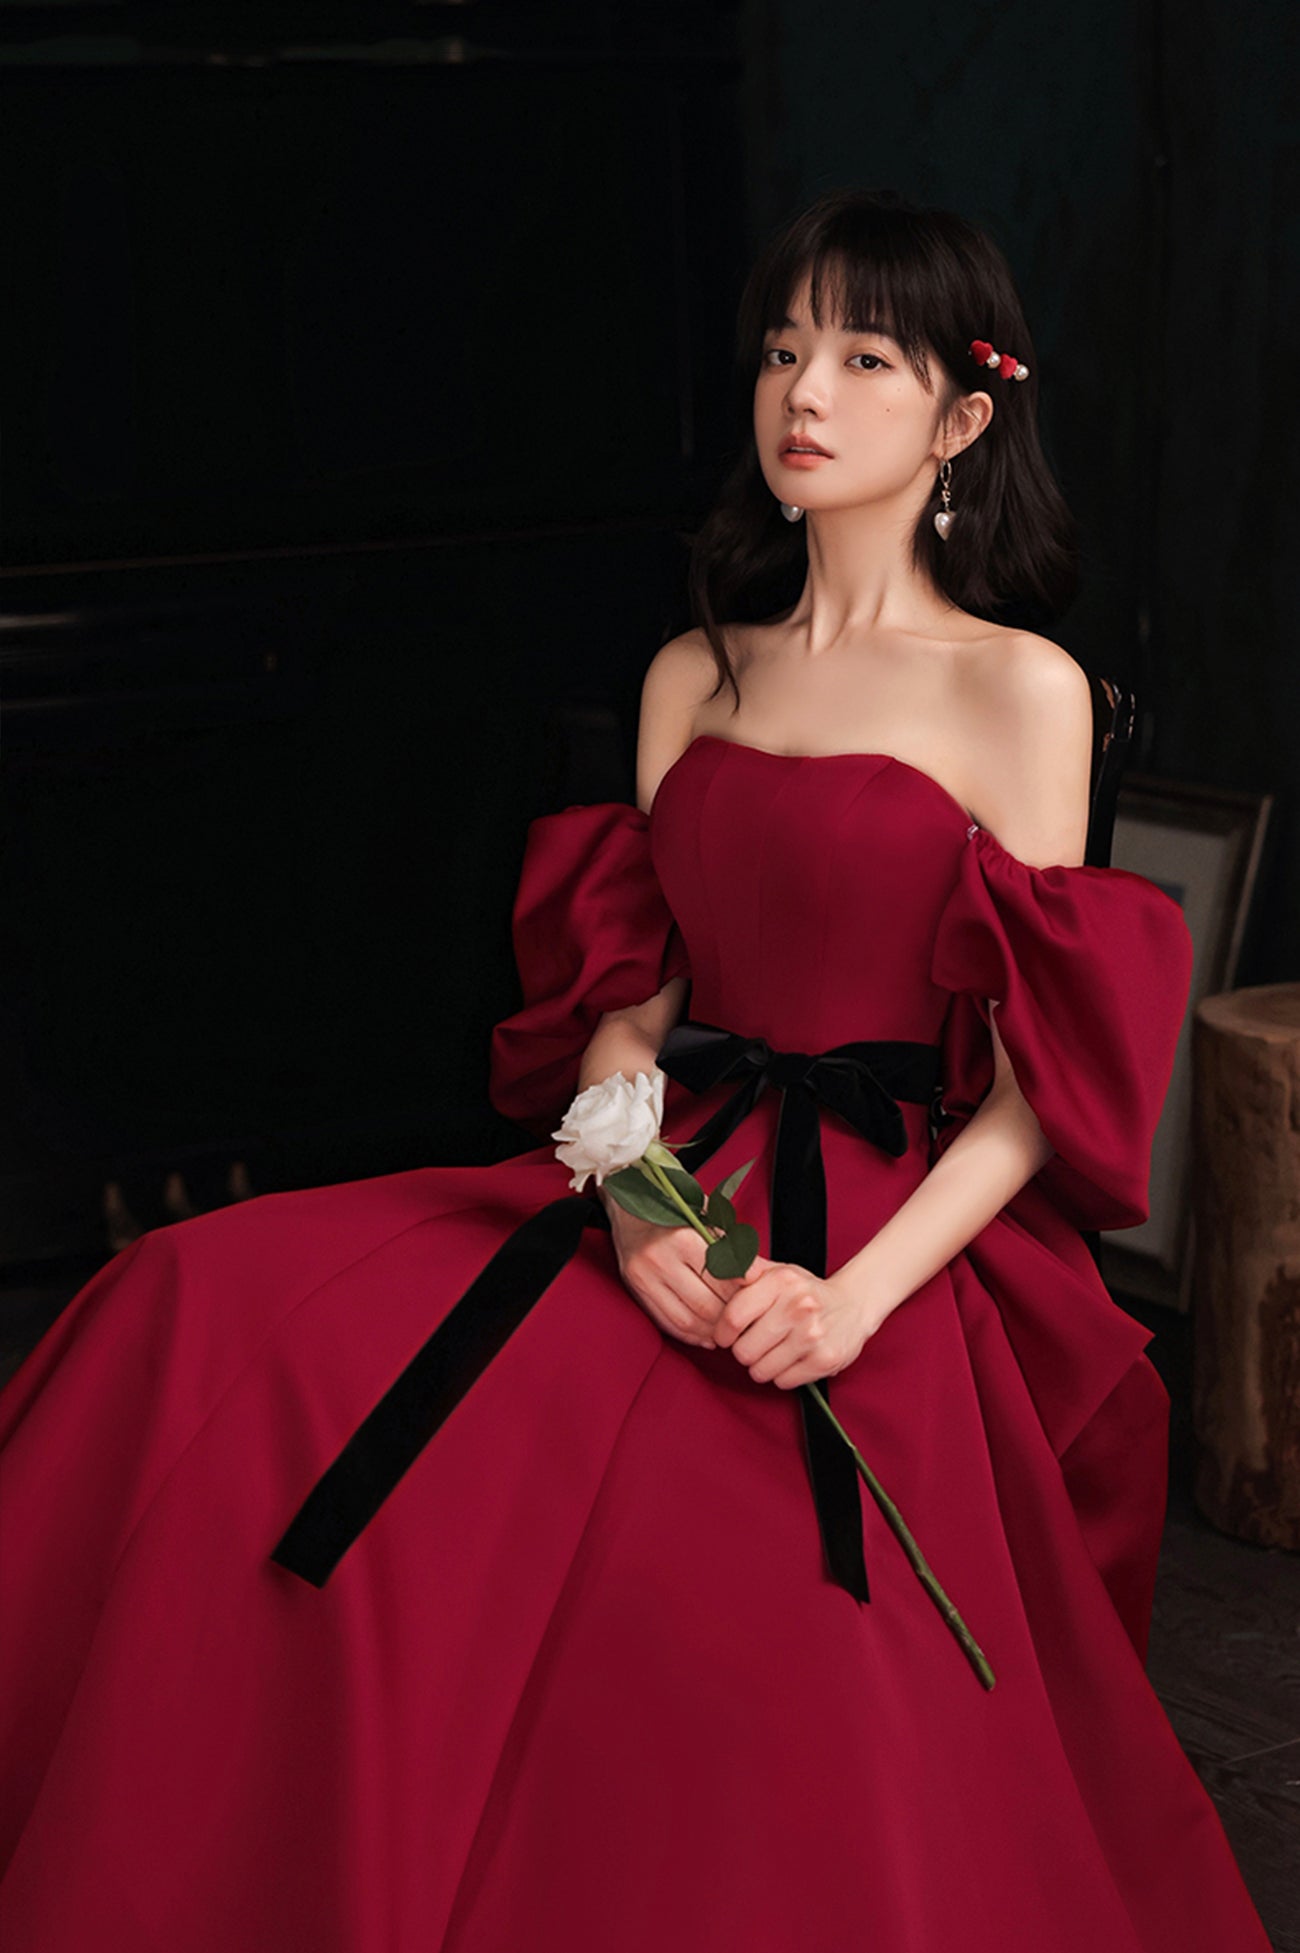 Burgundy Satin Long A-Line Prom Dress, Burgundy Off the Shoulder Evening Dress